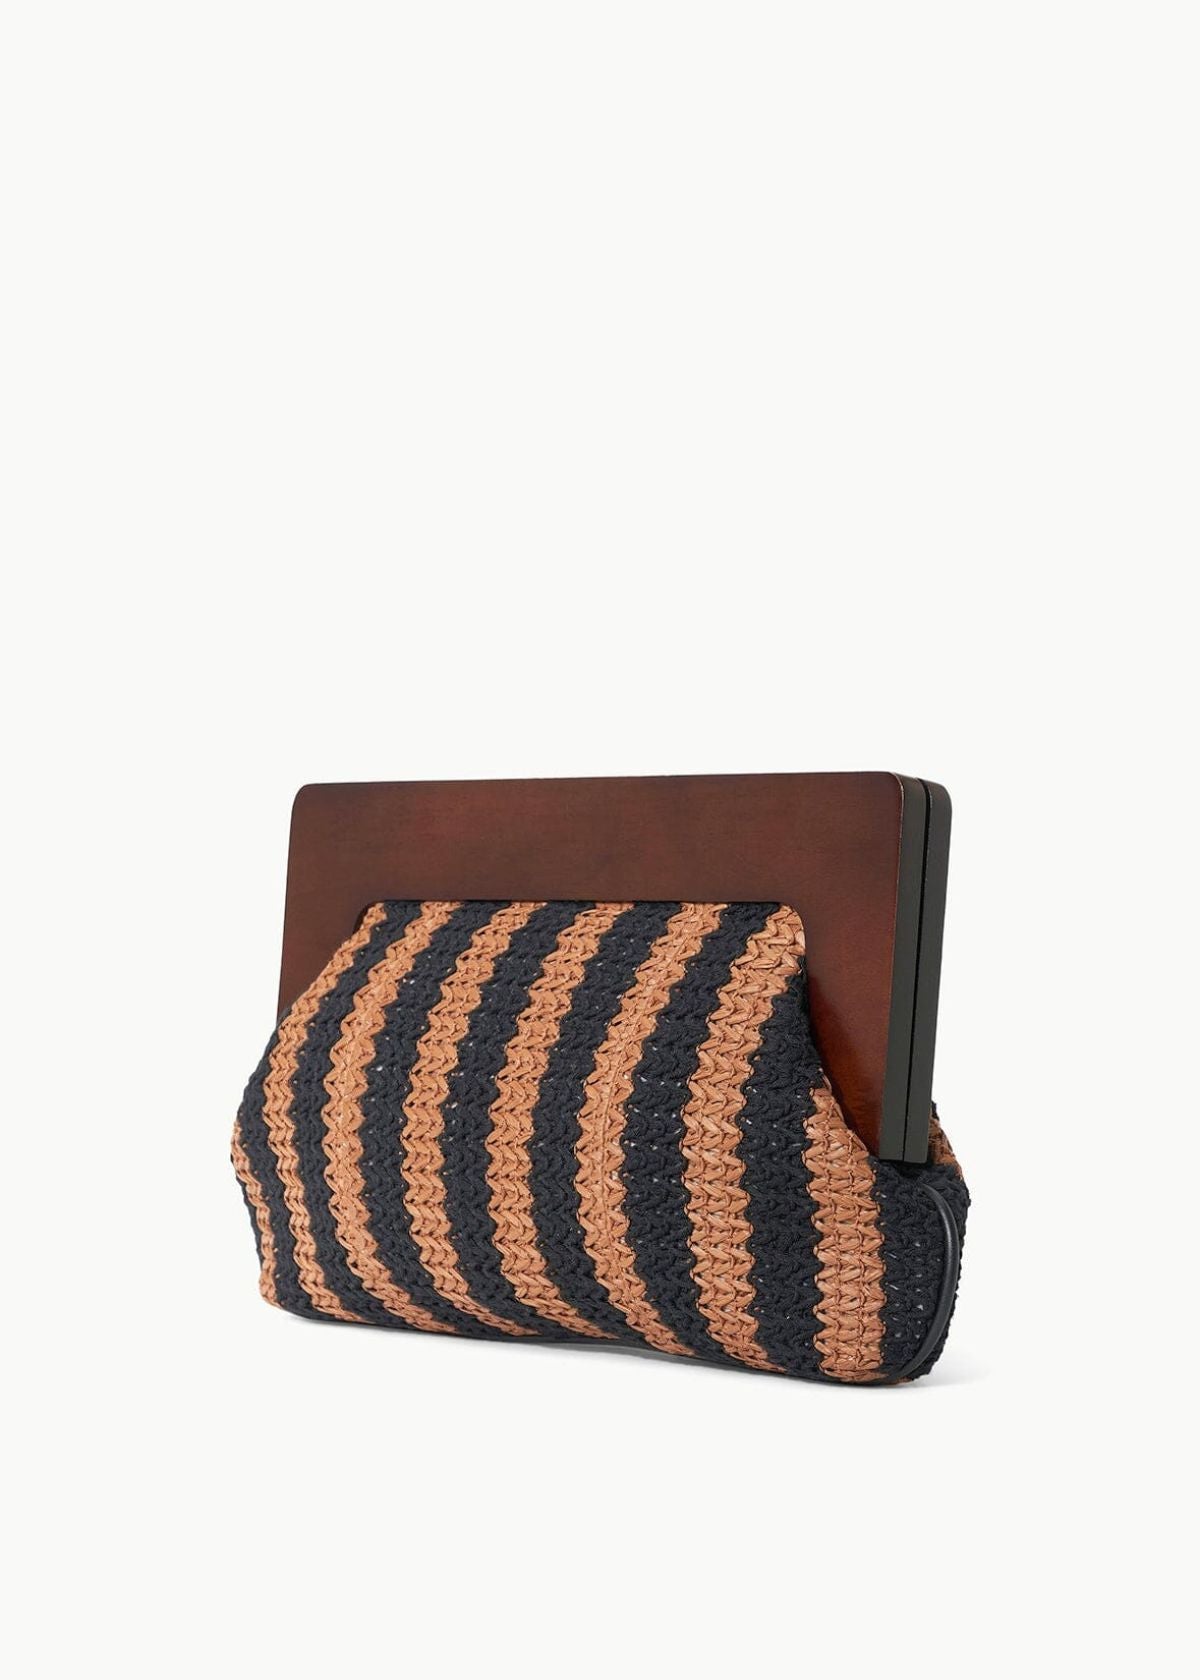 STAUD Alba Frame Clutch Handbag - Black/Tan Seashore Stripe